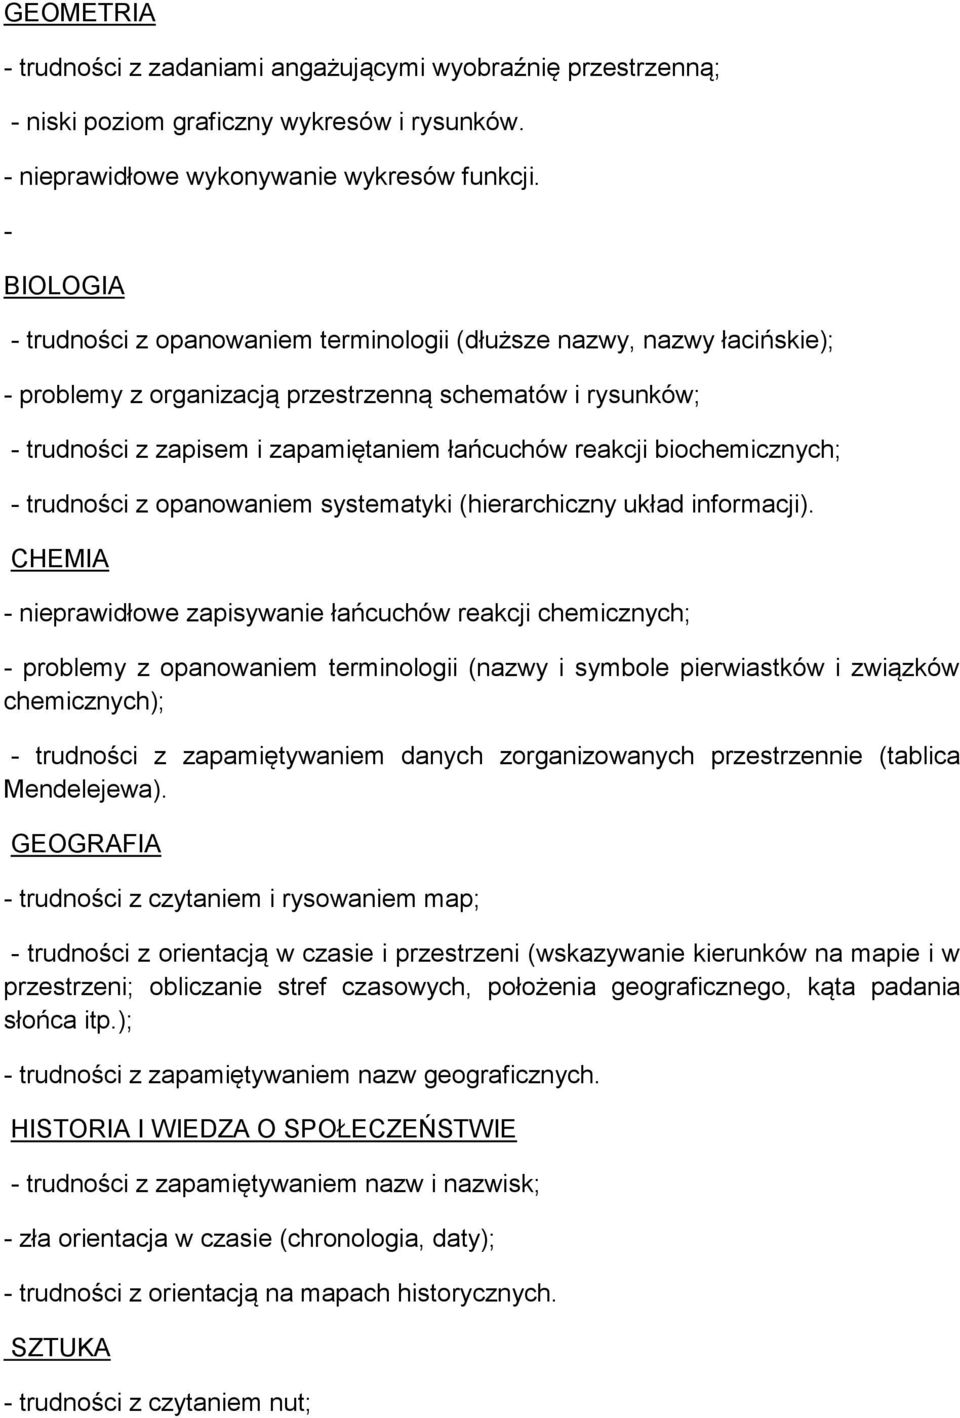 biochemicznych; - trudności z opanowaniem systematyki (hierarchiczny układ informacji).